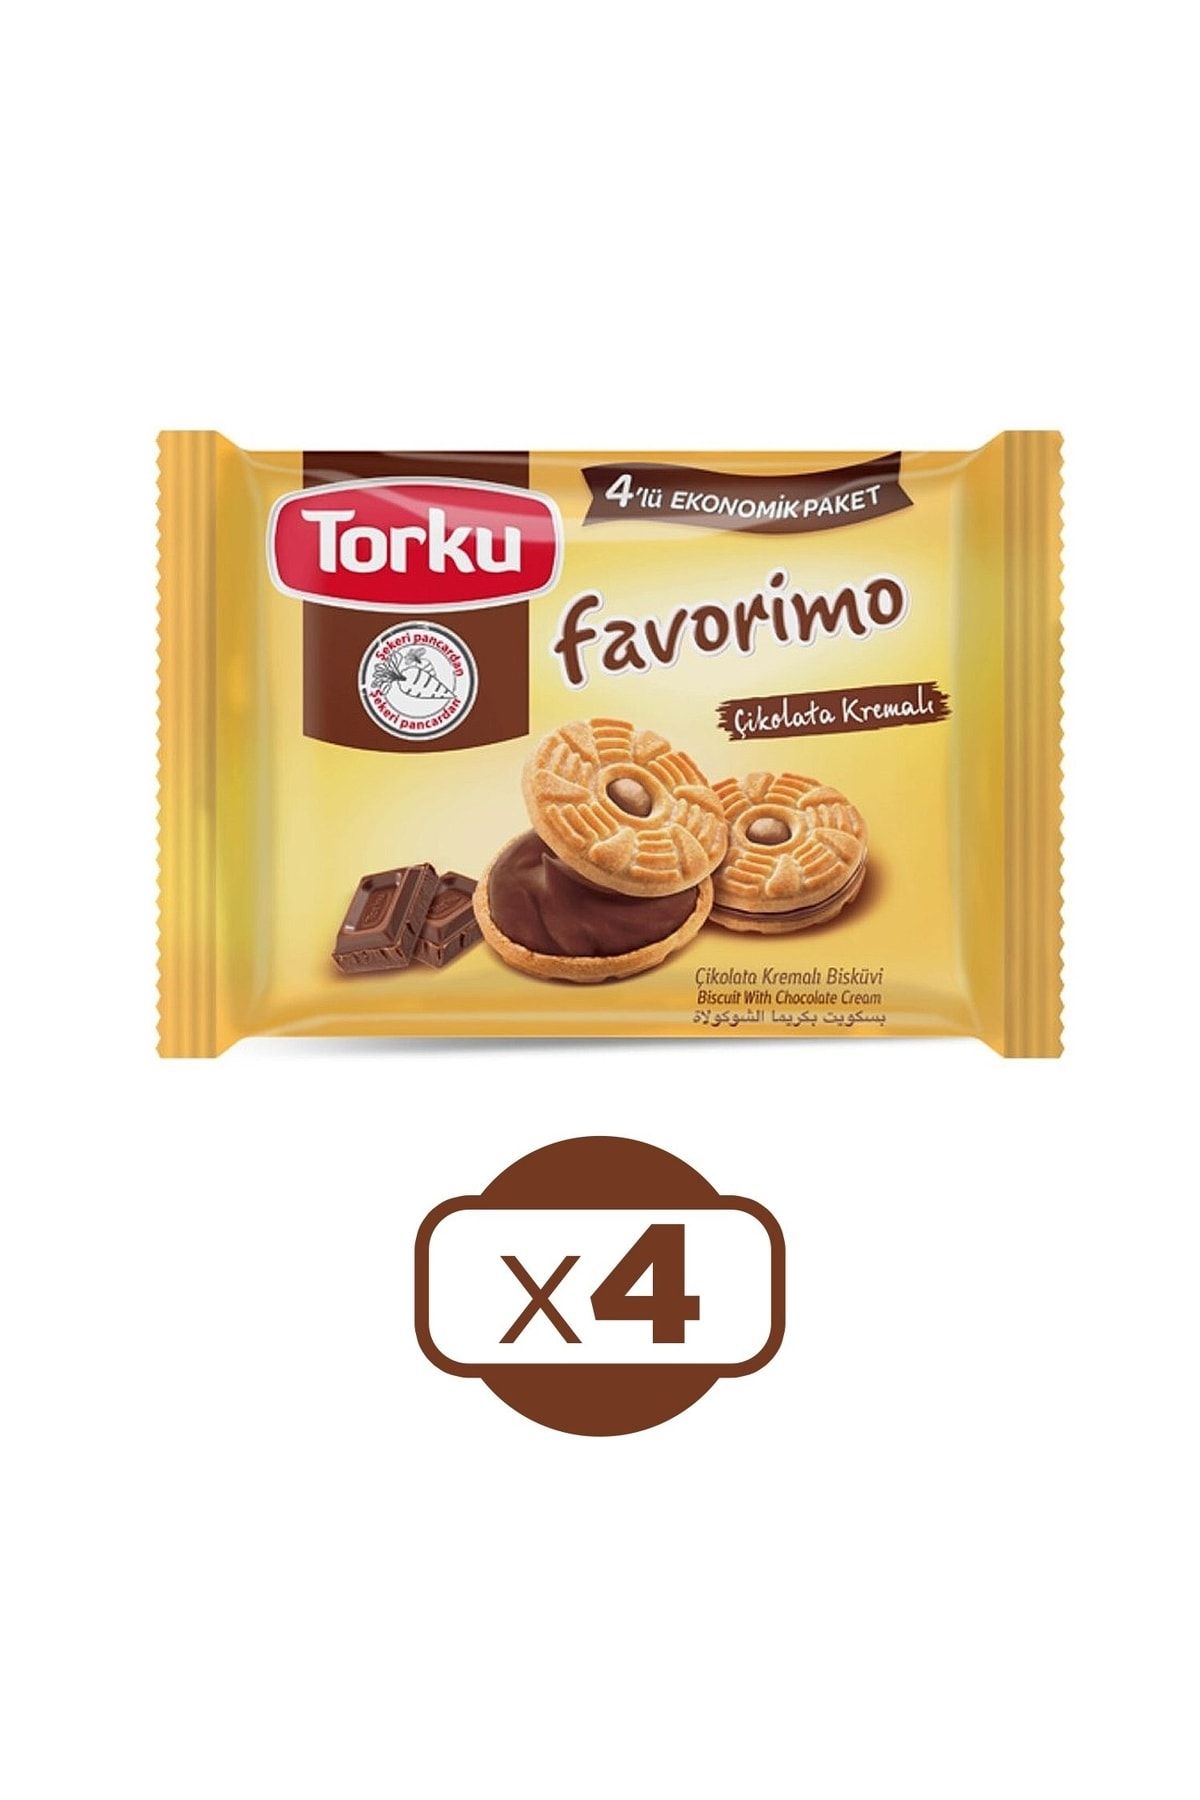 Torku Favorimo 4 Lü Çikolata Kremalı Bisküvi X 4 Paket